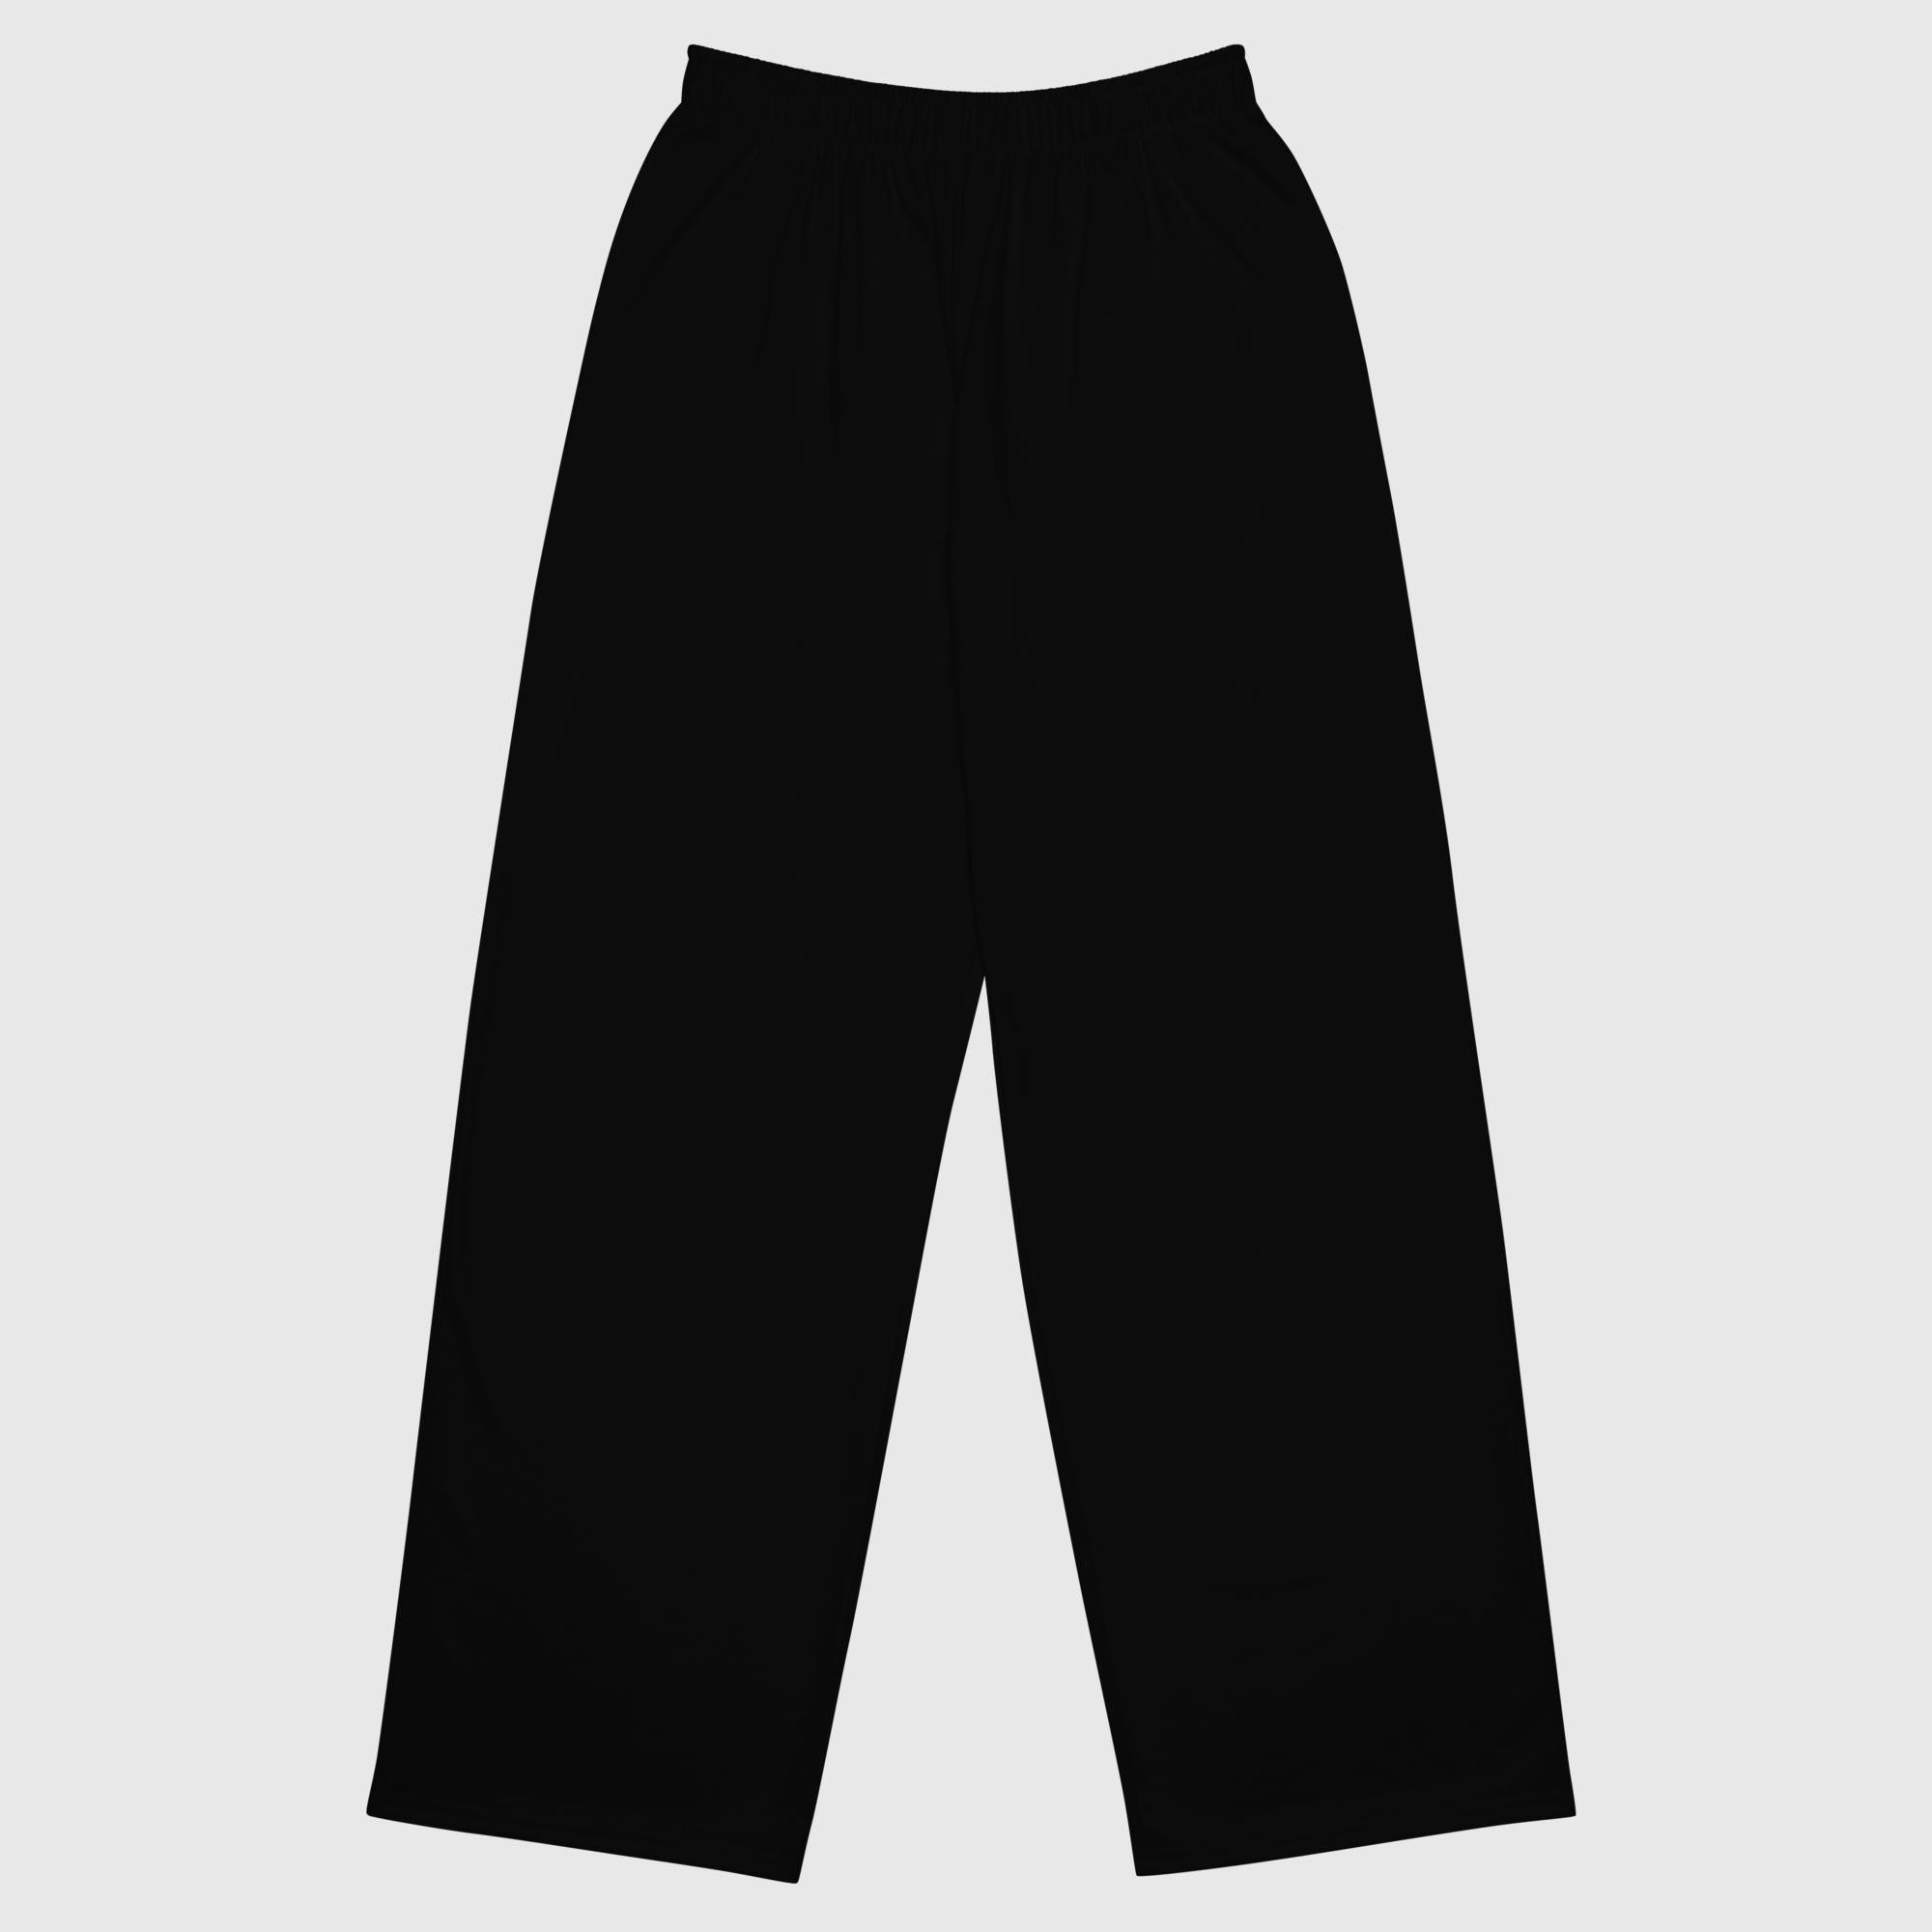 Pantalón ancho unisex - Negro